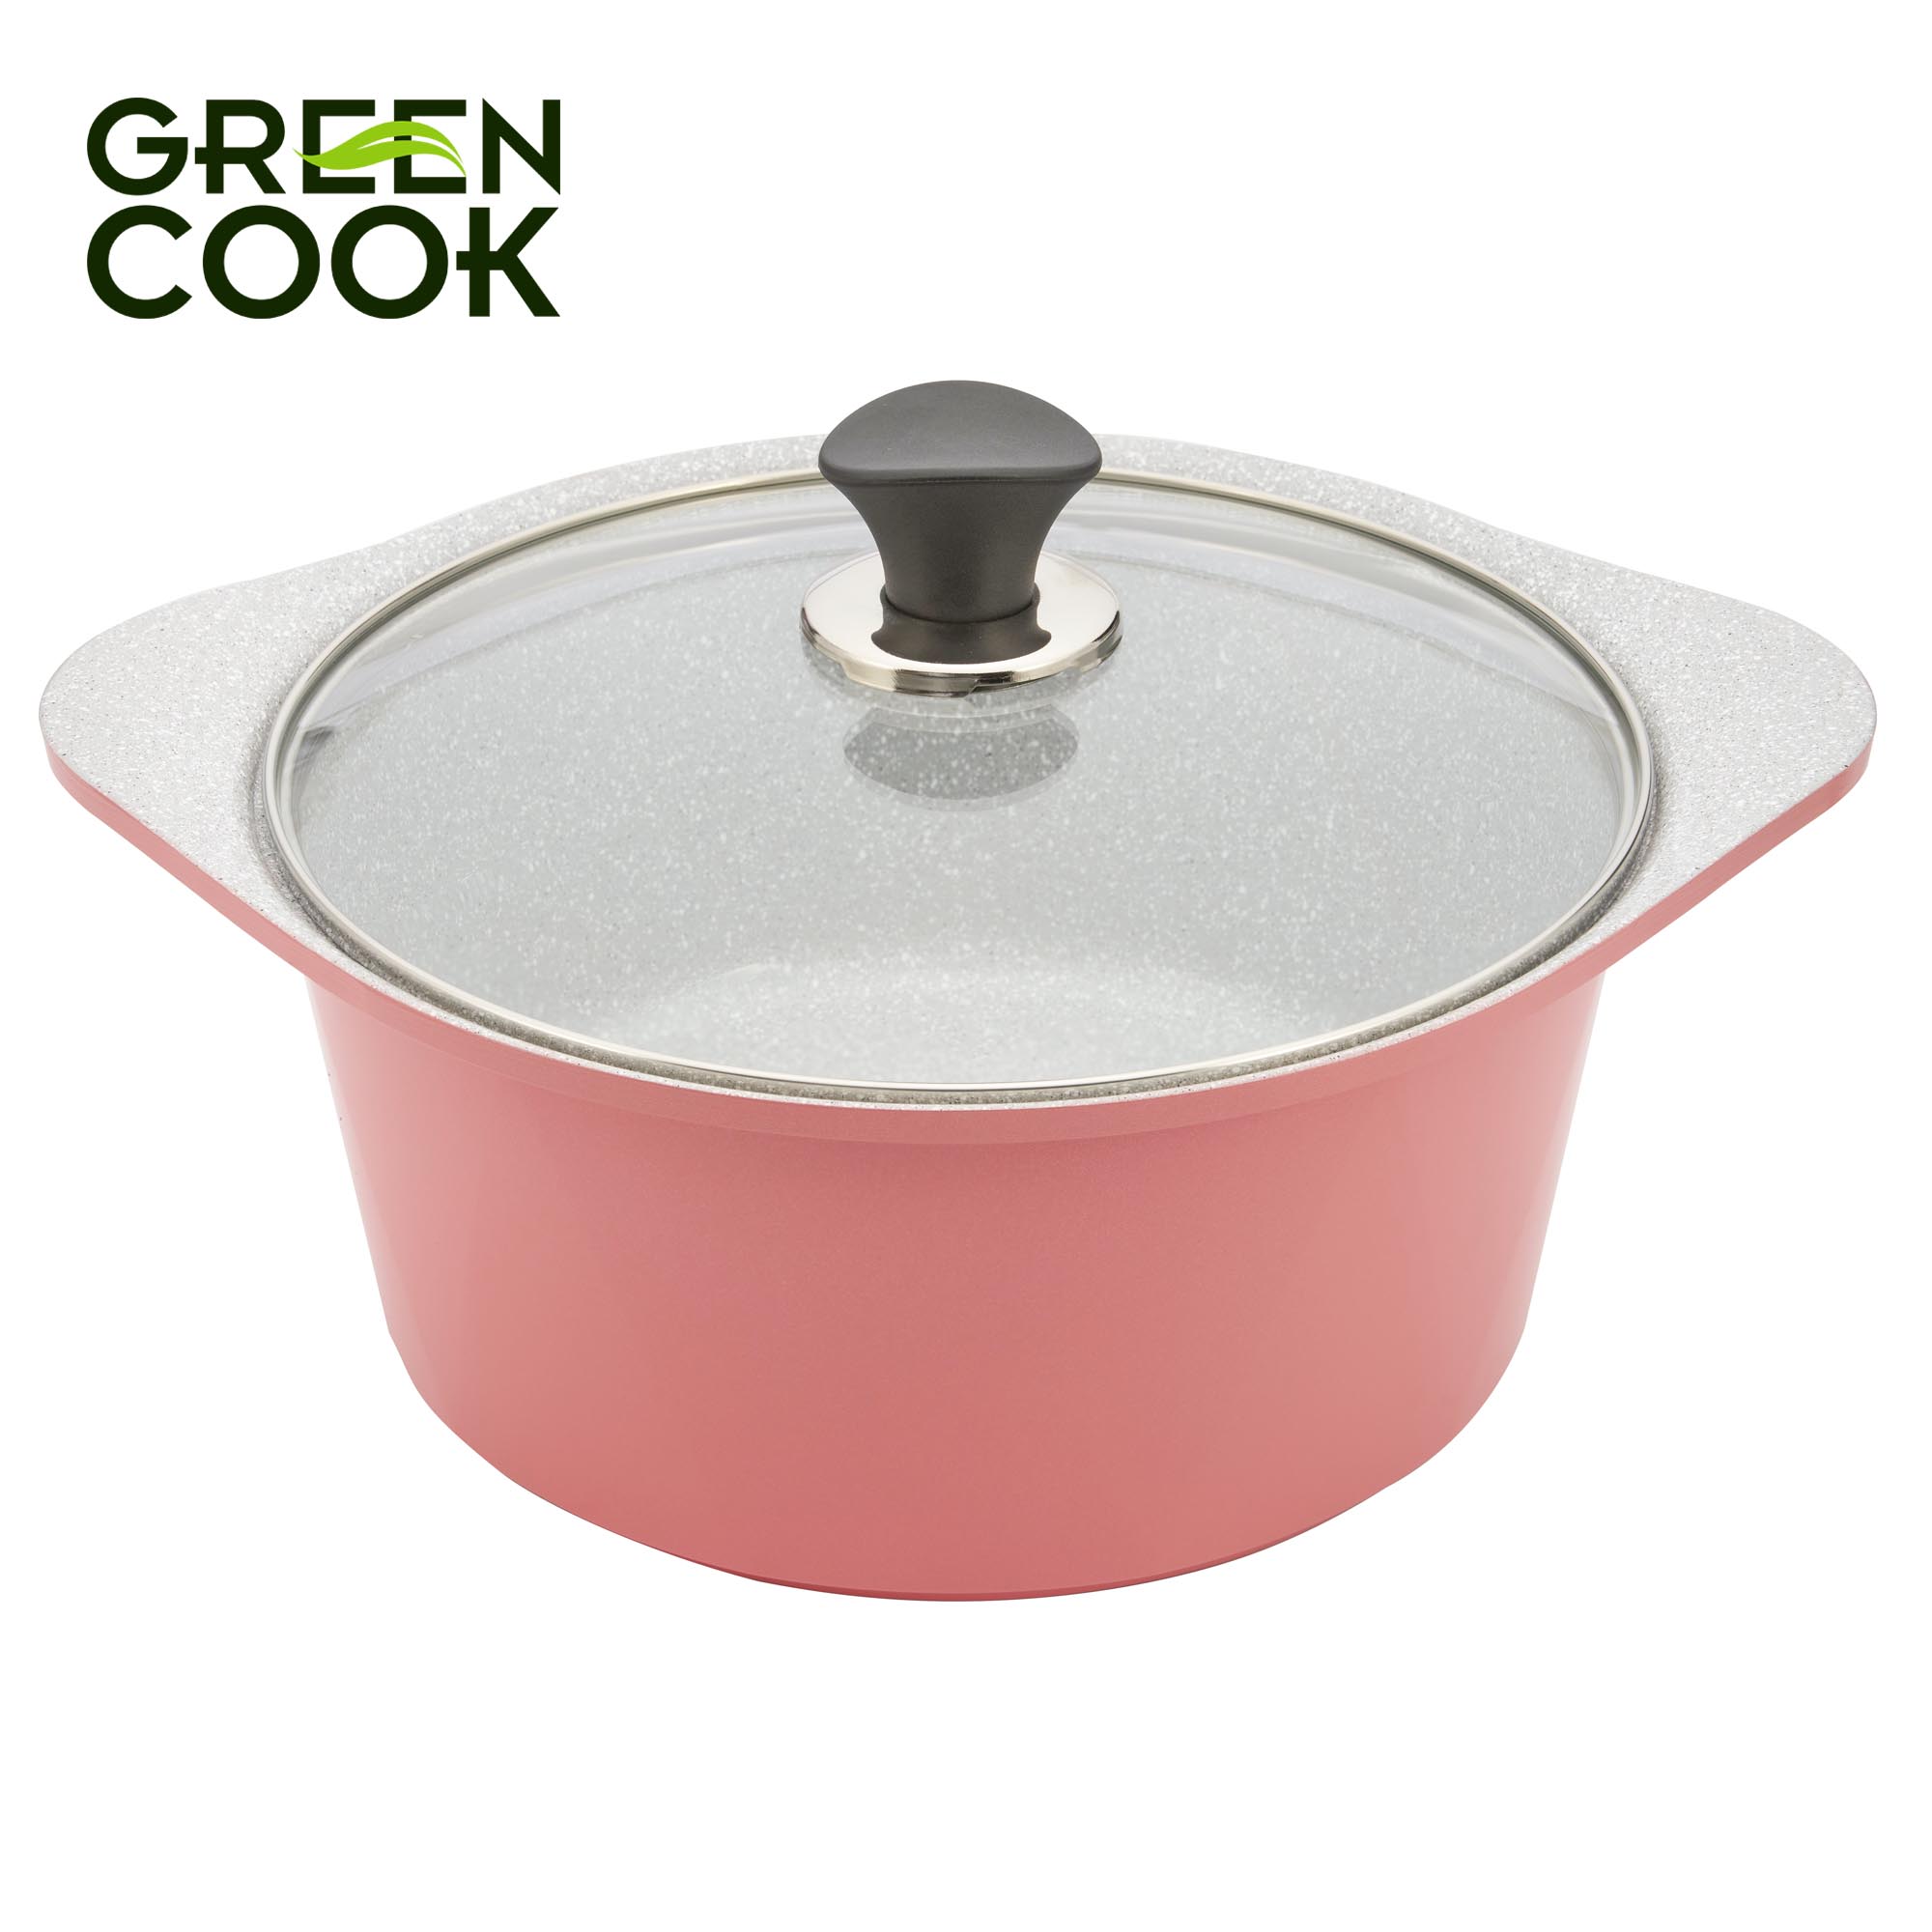 Bộ 3 nồi đúc ceramic vân đá chống dính đáy từ 18 cm, 20 cm và 24 cm Green Cook GCS02 màu hồng, dùng được tất cả các loại bếp, công nghệ Hàn Quốc sản xuất tại Việt Nam - Hàng chính hãng greencook